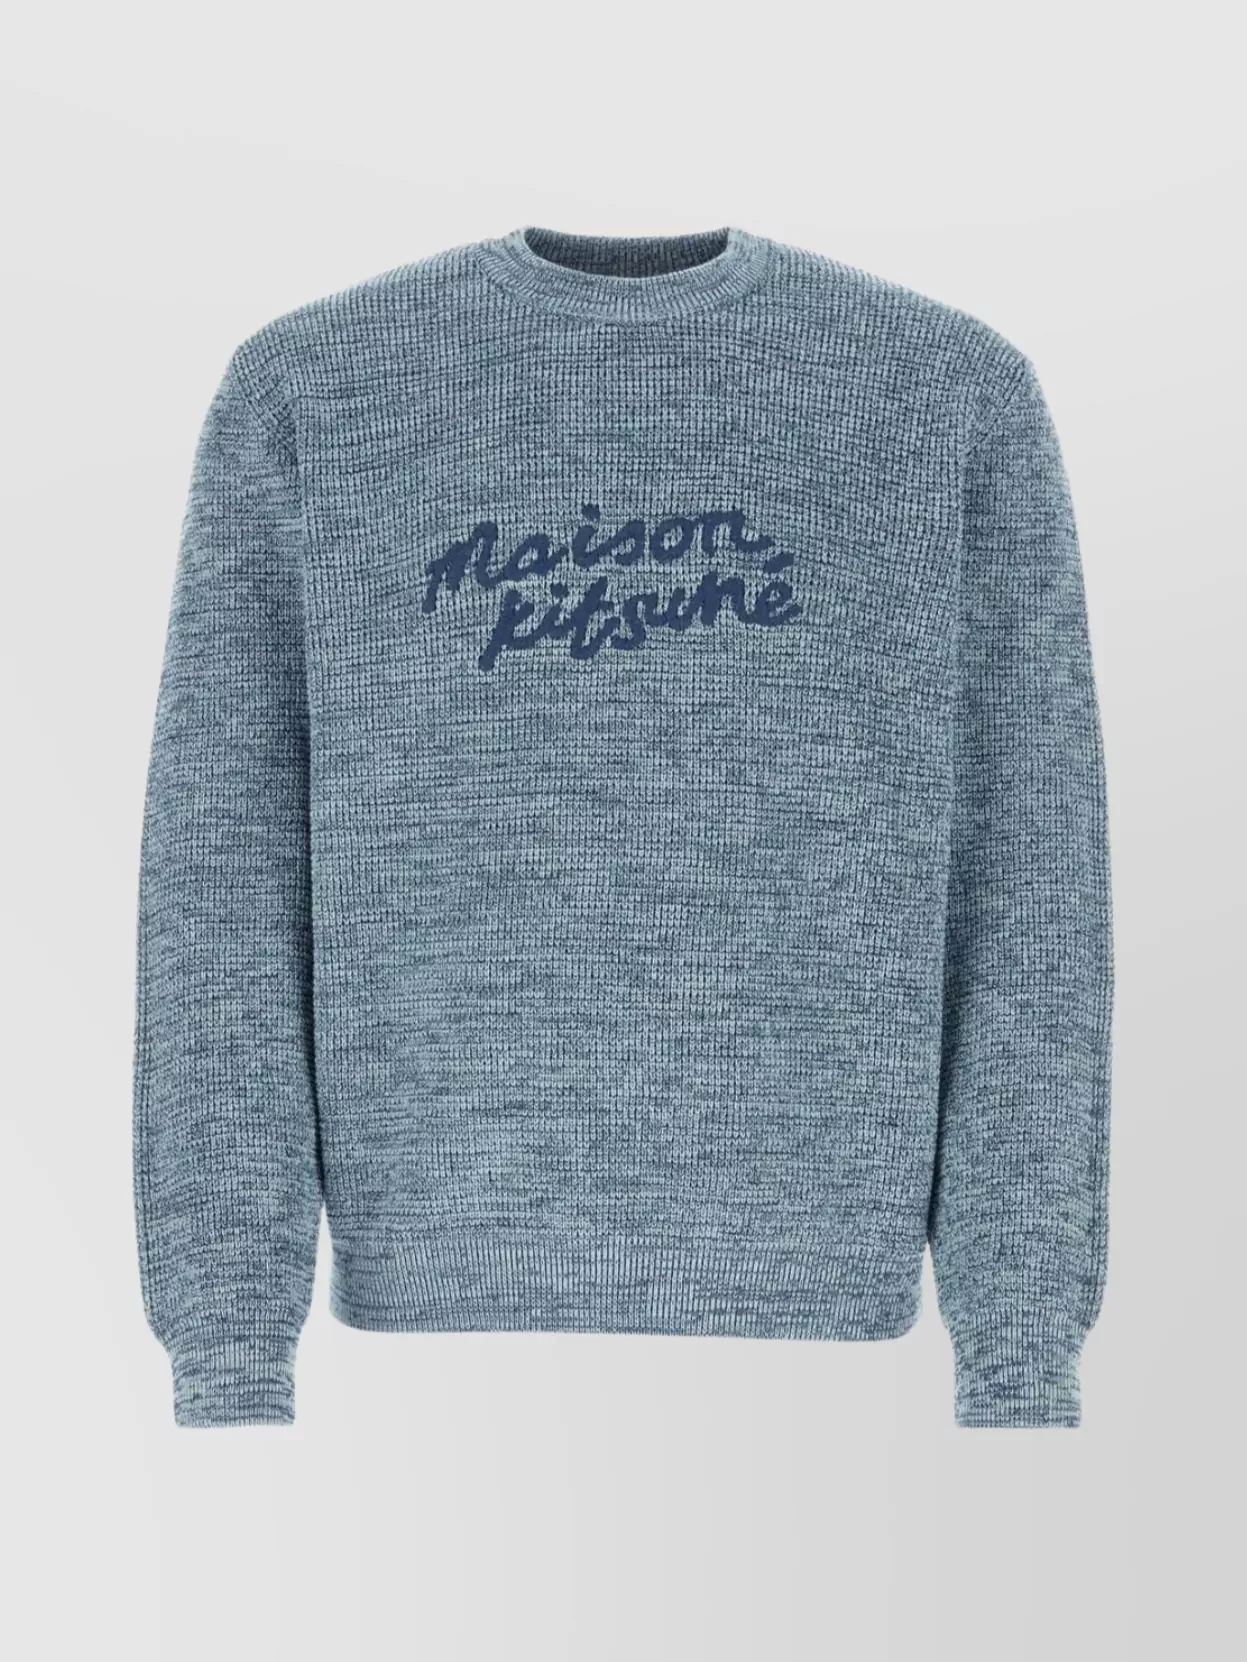 Shop Maison Kitsuné Light Blue Crew Neck Cotton Sweater